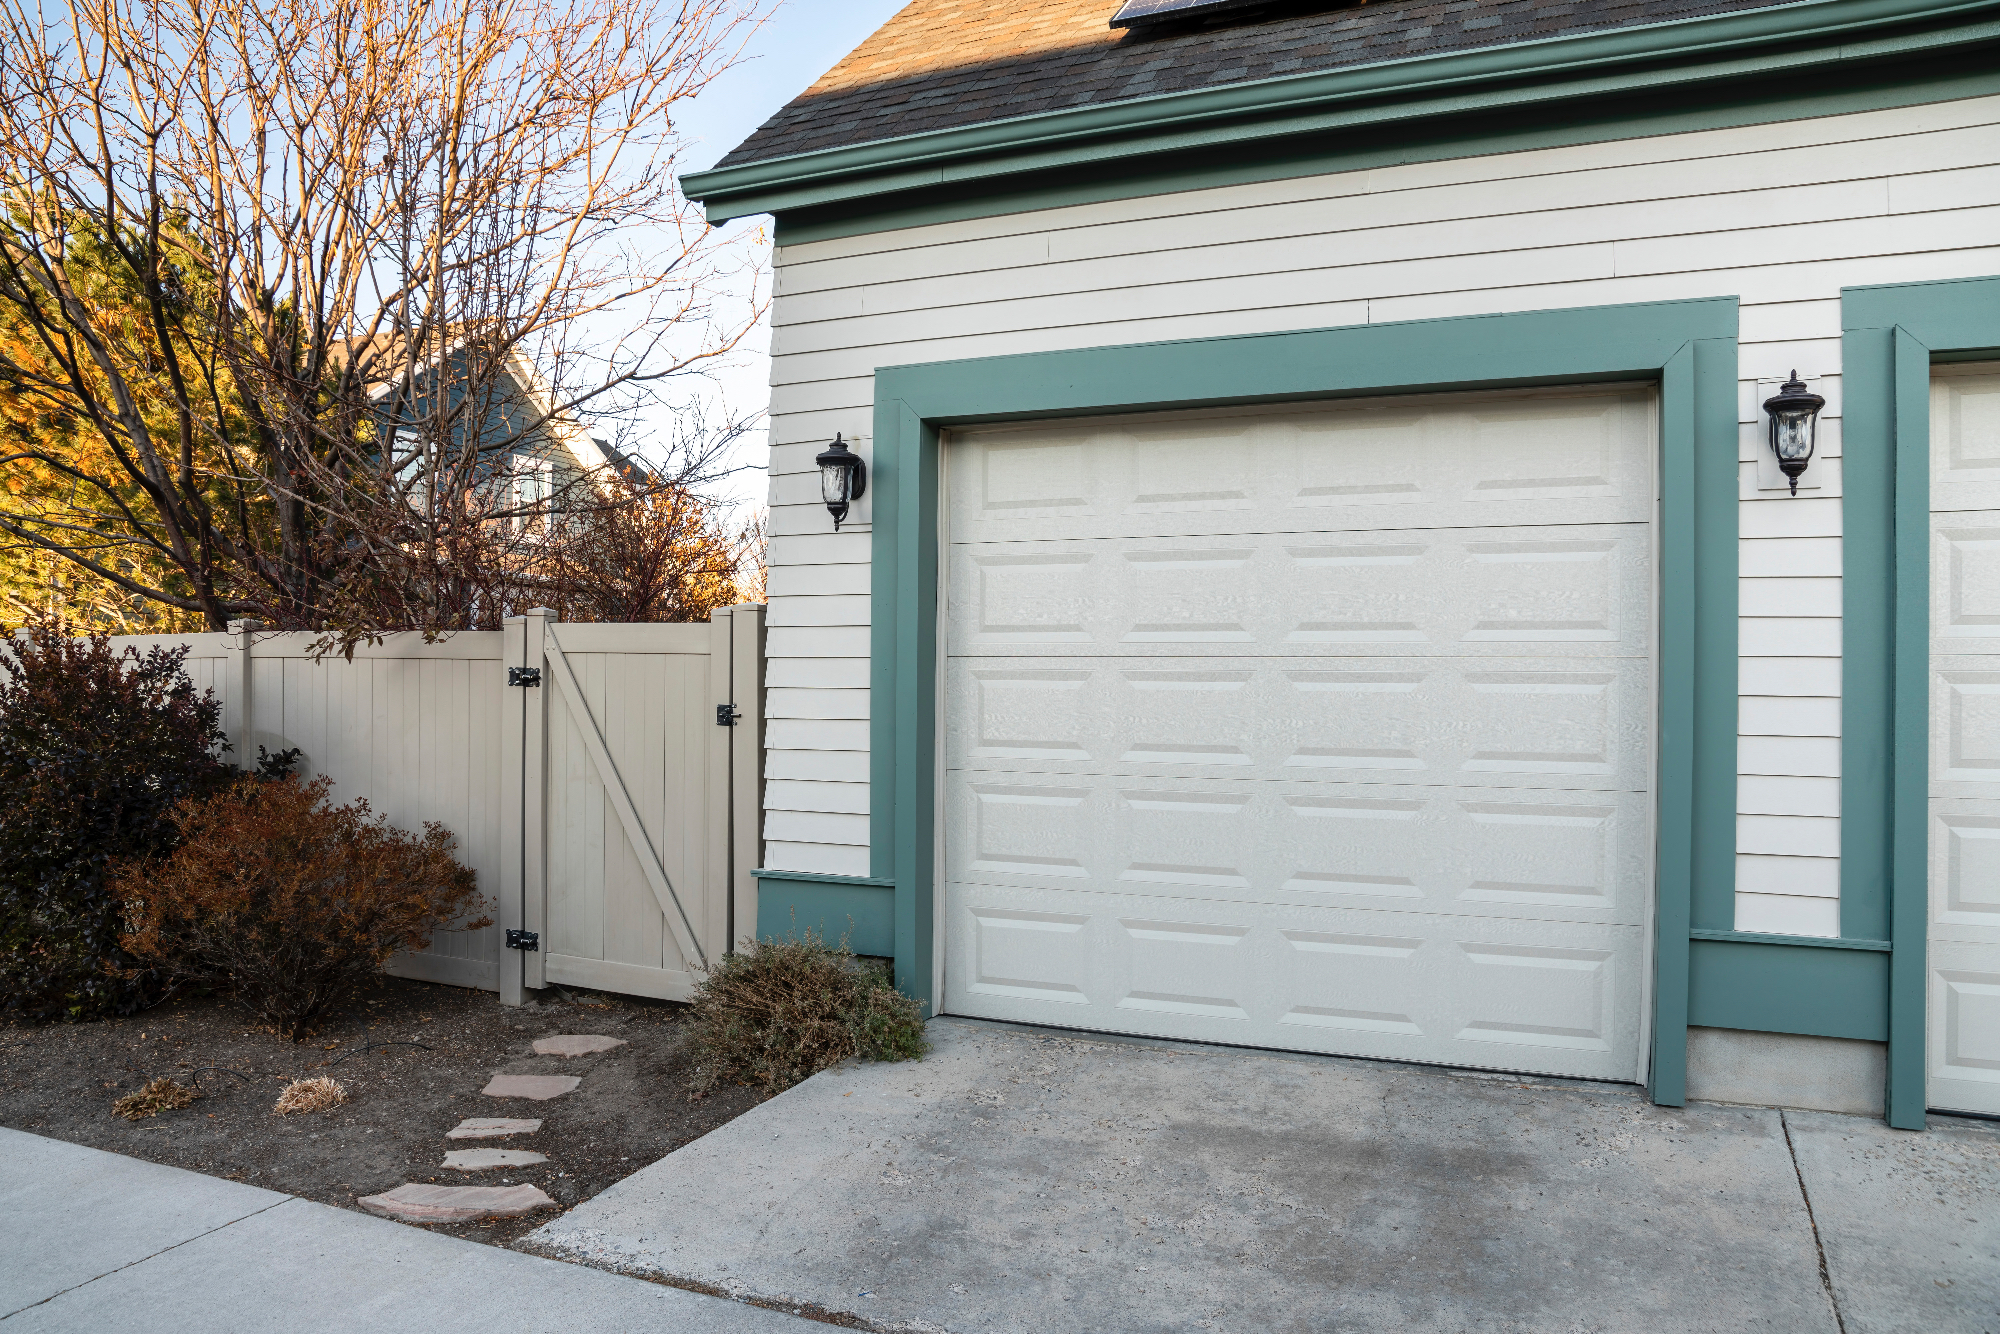 Garažna vrata so bila še zadnji člen za obnovo naše garaže